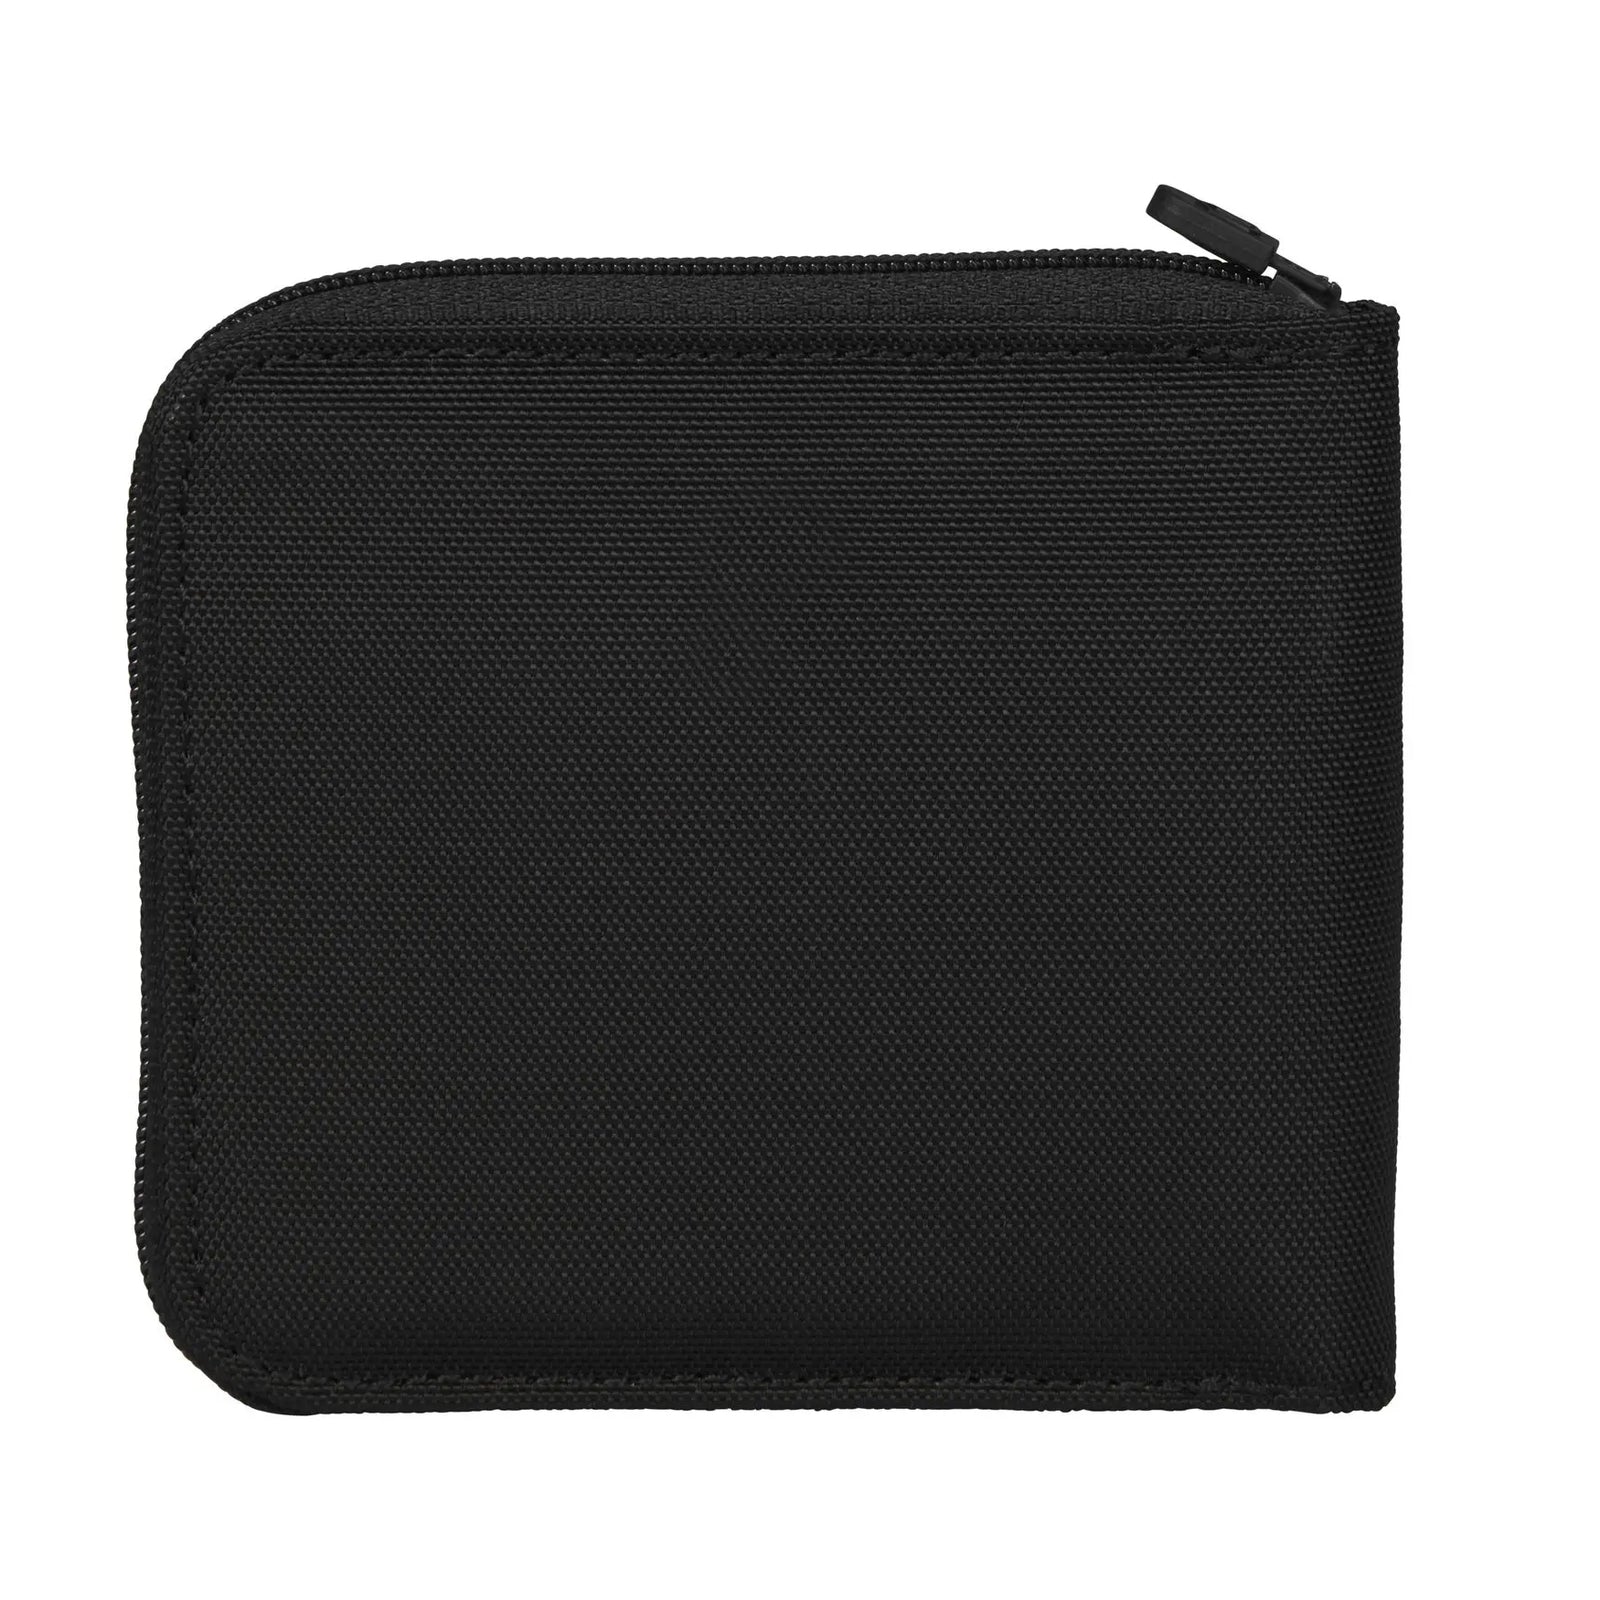 Victorinox Swiss Army Zip Around Wallet Black | Altman Luggage – Altman ...